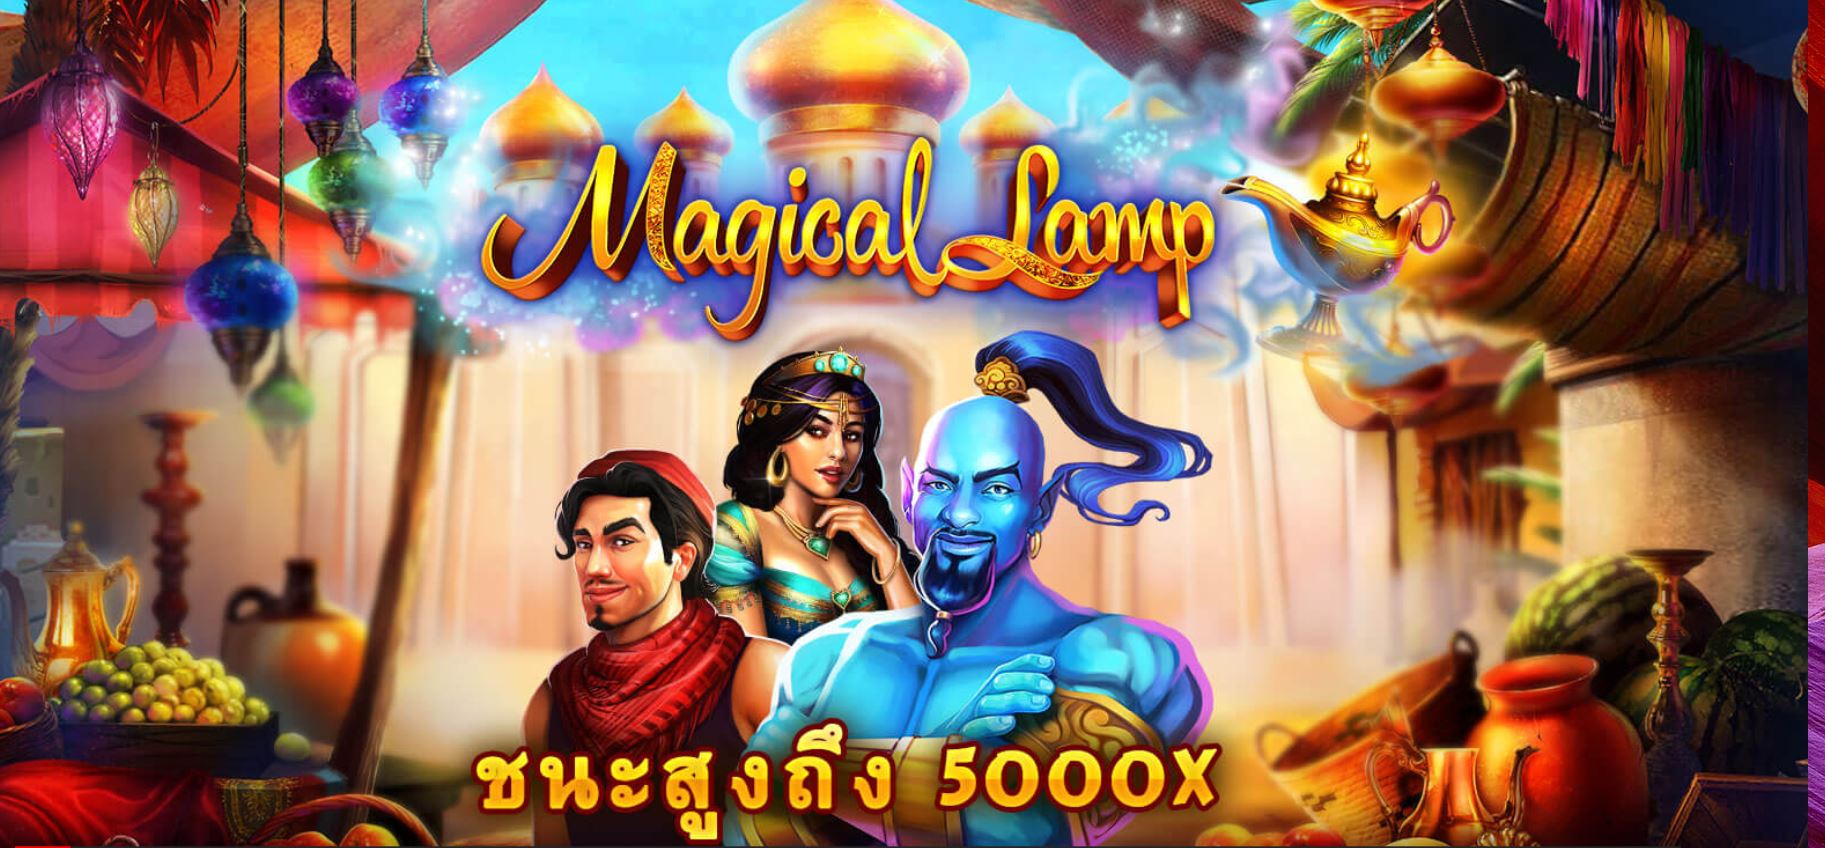 slot สล็อต  SG Magic Lamp- สัญลักษณ์ขนาดใหญ่ช่วยให้คุณชนะรางวัลใหญ่ 5000 เท่า  ลงทะเบียนรับทันที200 pay69